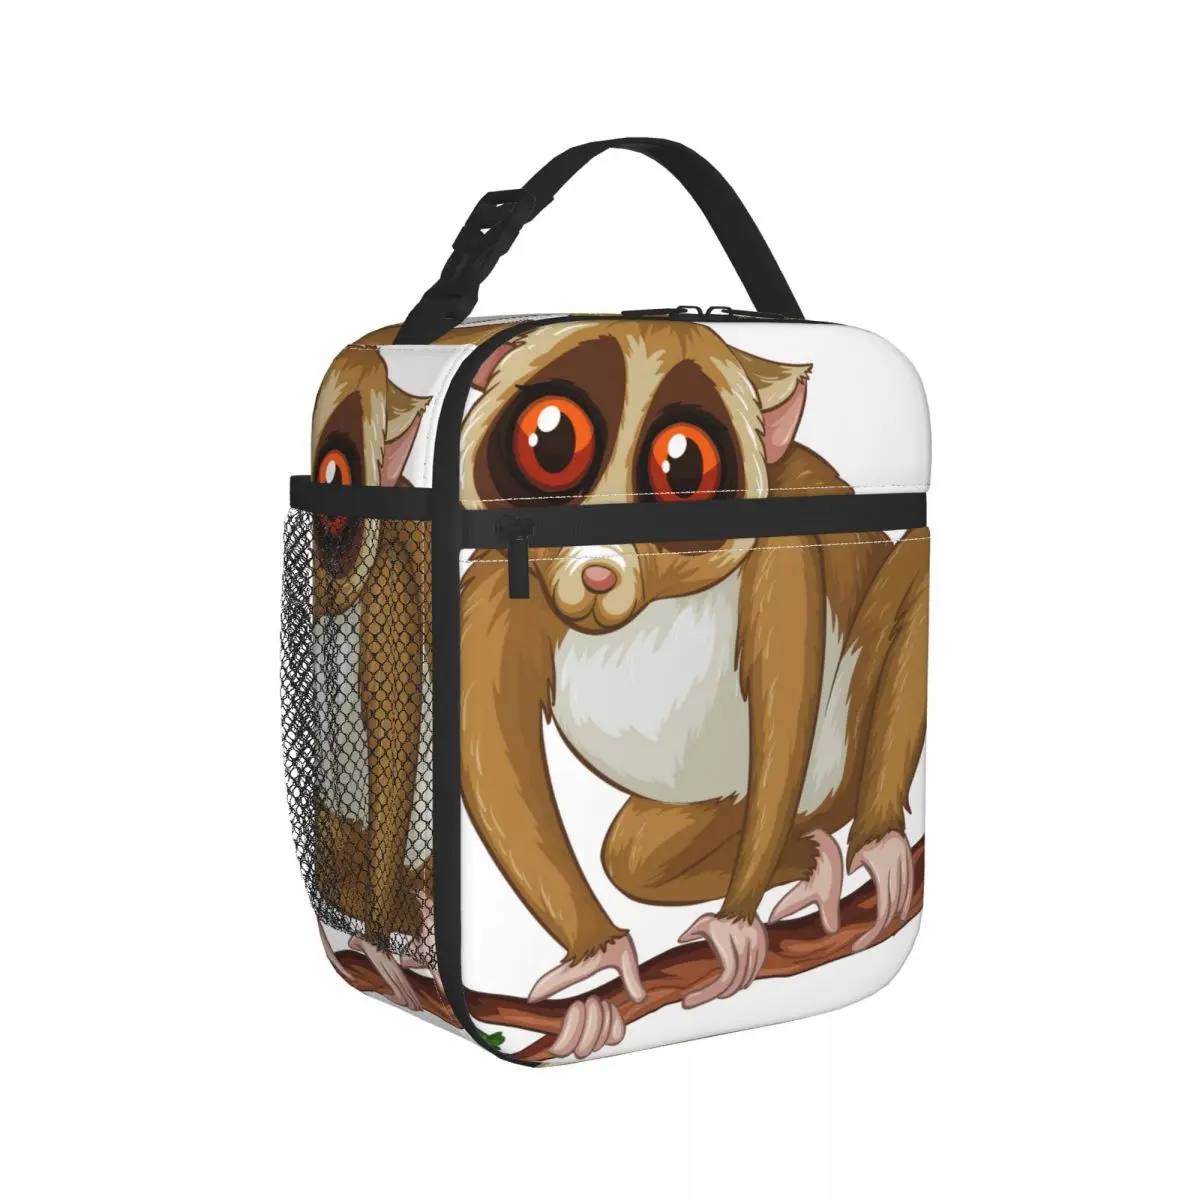 

Сумка для ланча с мультяшным рисунком Lemur, Термоизолированный Ланч-бокс, сумка-тоут, сумка-холодильник, обеденный контейнер Bento, сумка для хр...